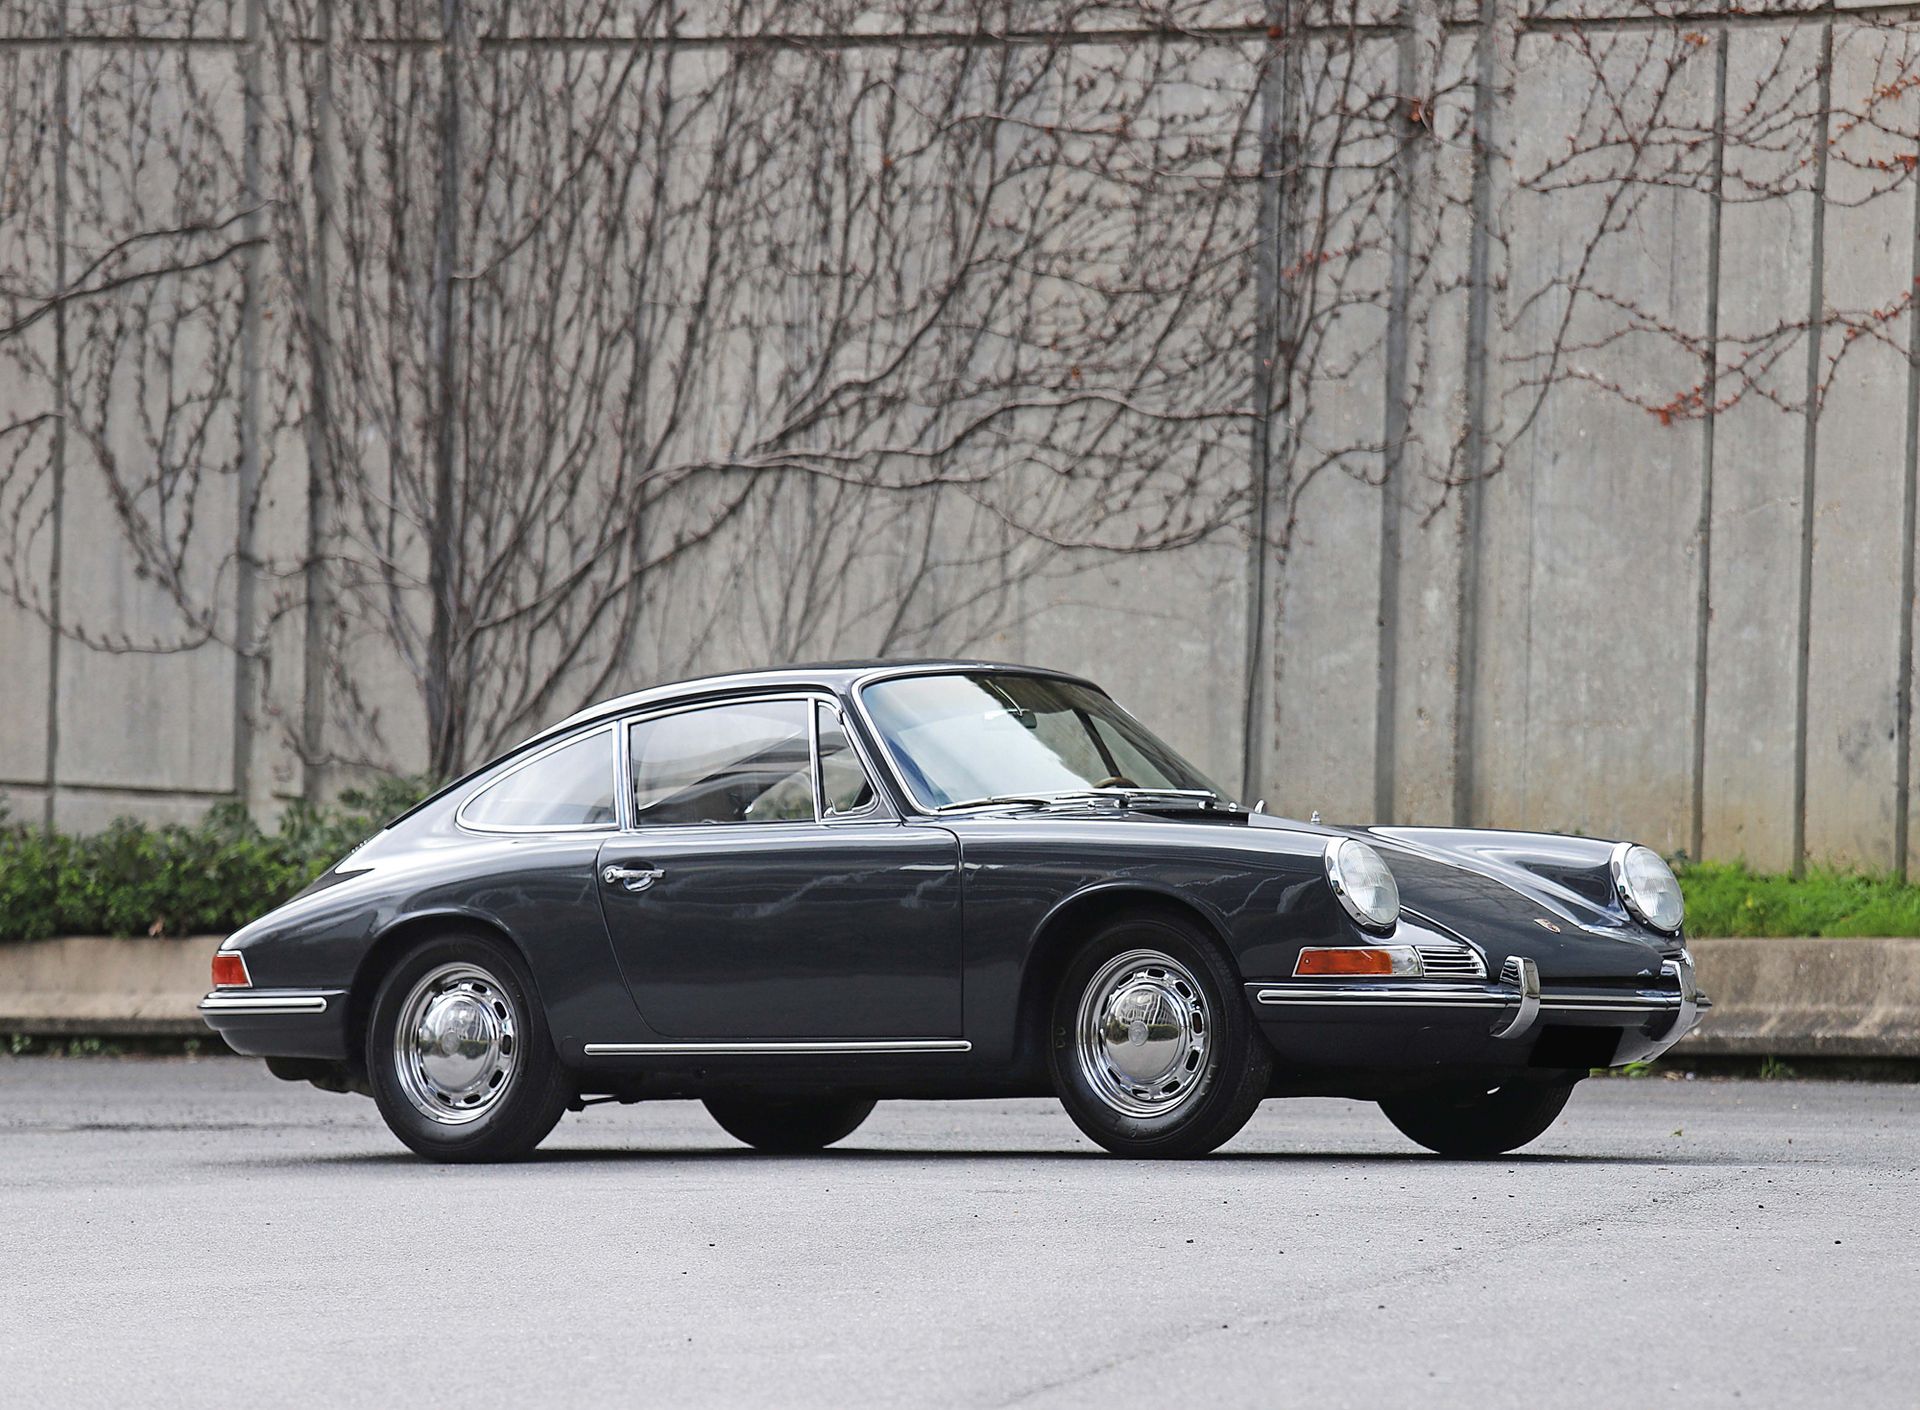 Porsche 911 2.0 1966 Spanische Zulassungsbescheinigung
Bescheinigung FFVE 
Fahrg&hellip;